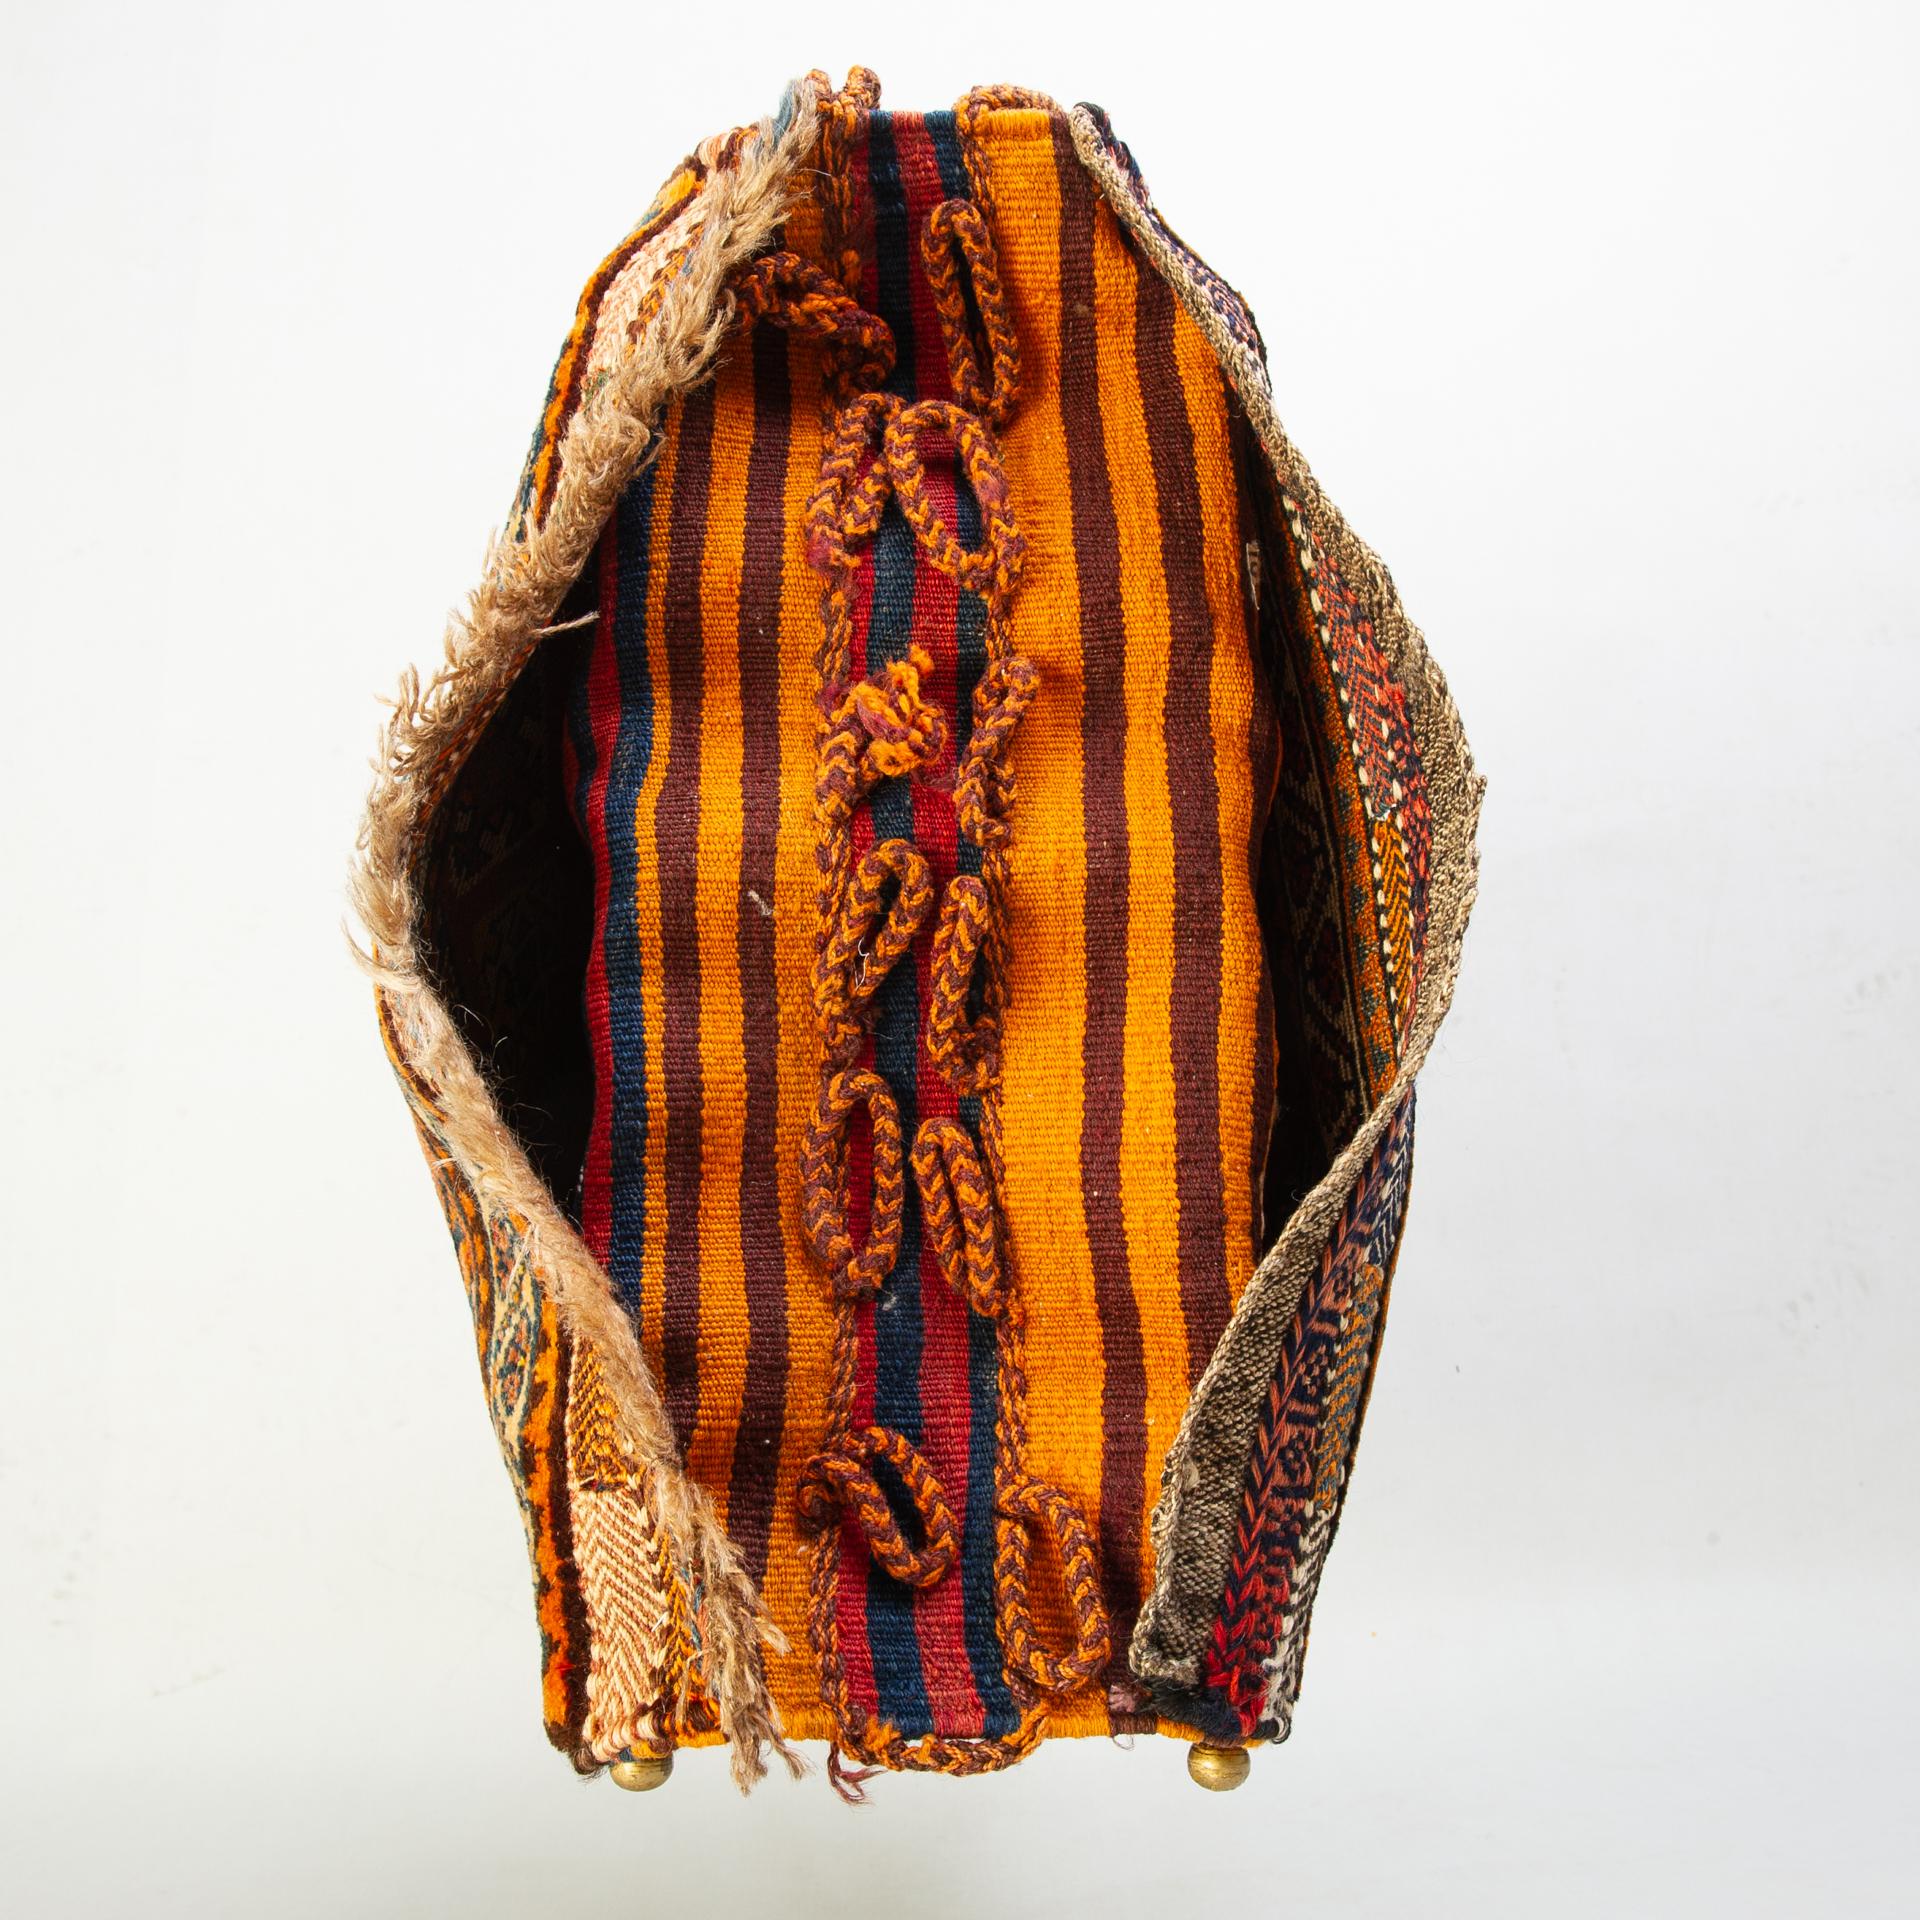 nr. 894 - Doppelte orientalische Satteltasche, gewebt mit pflanzlich gefärbter Wolle.
Er kann an die Wand gehängt oder auf eine Staffelei gestellt werden und als Zeitungshalter dienen. Mit zwei Pads wird es zu einem angenehmen Kopfkissen mit